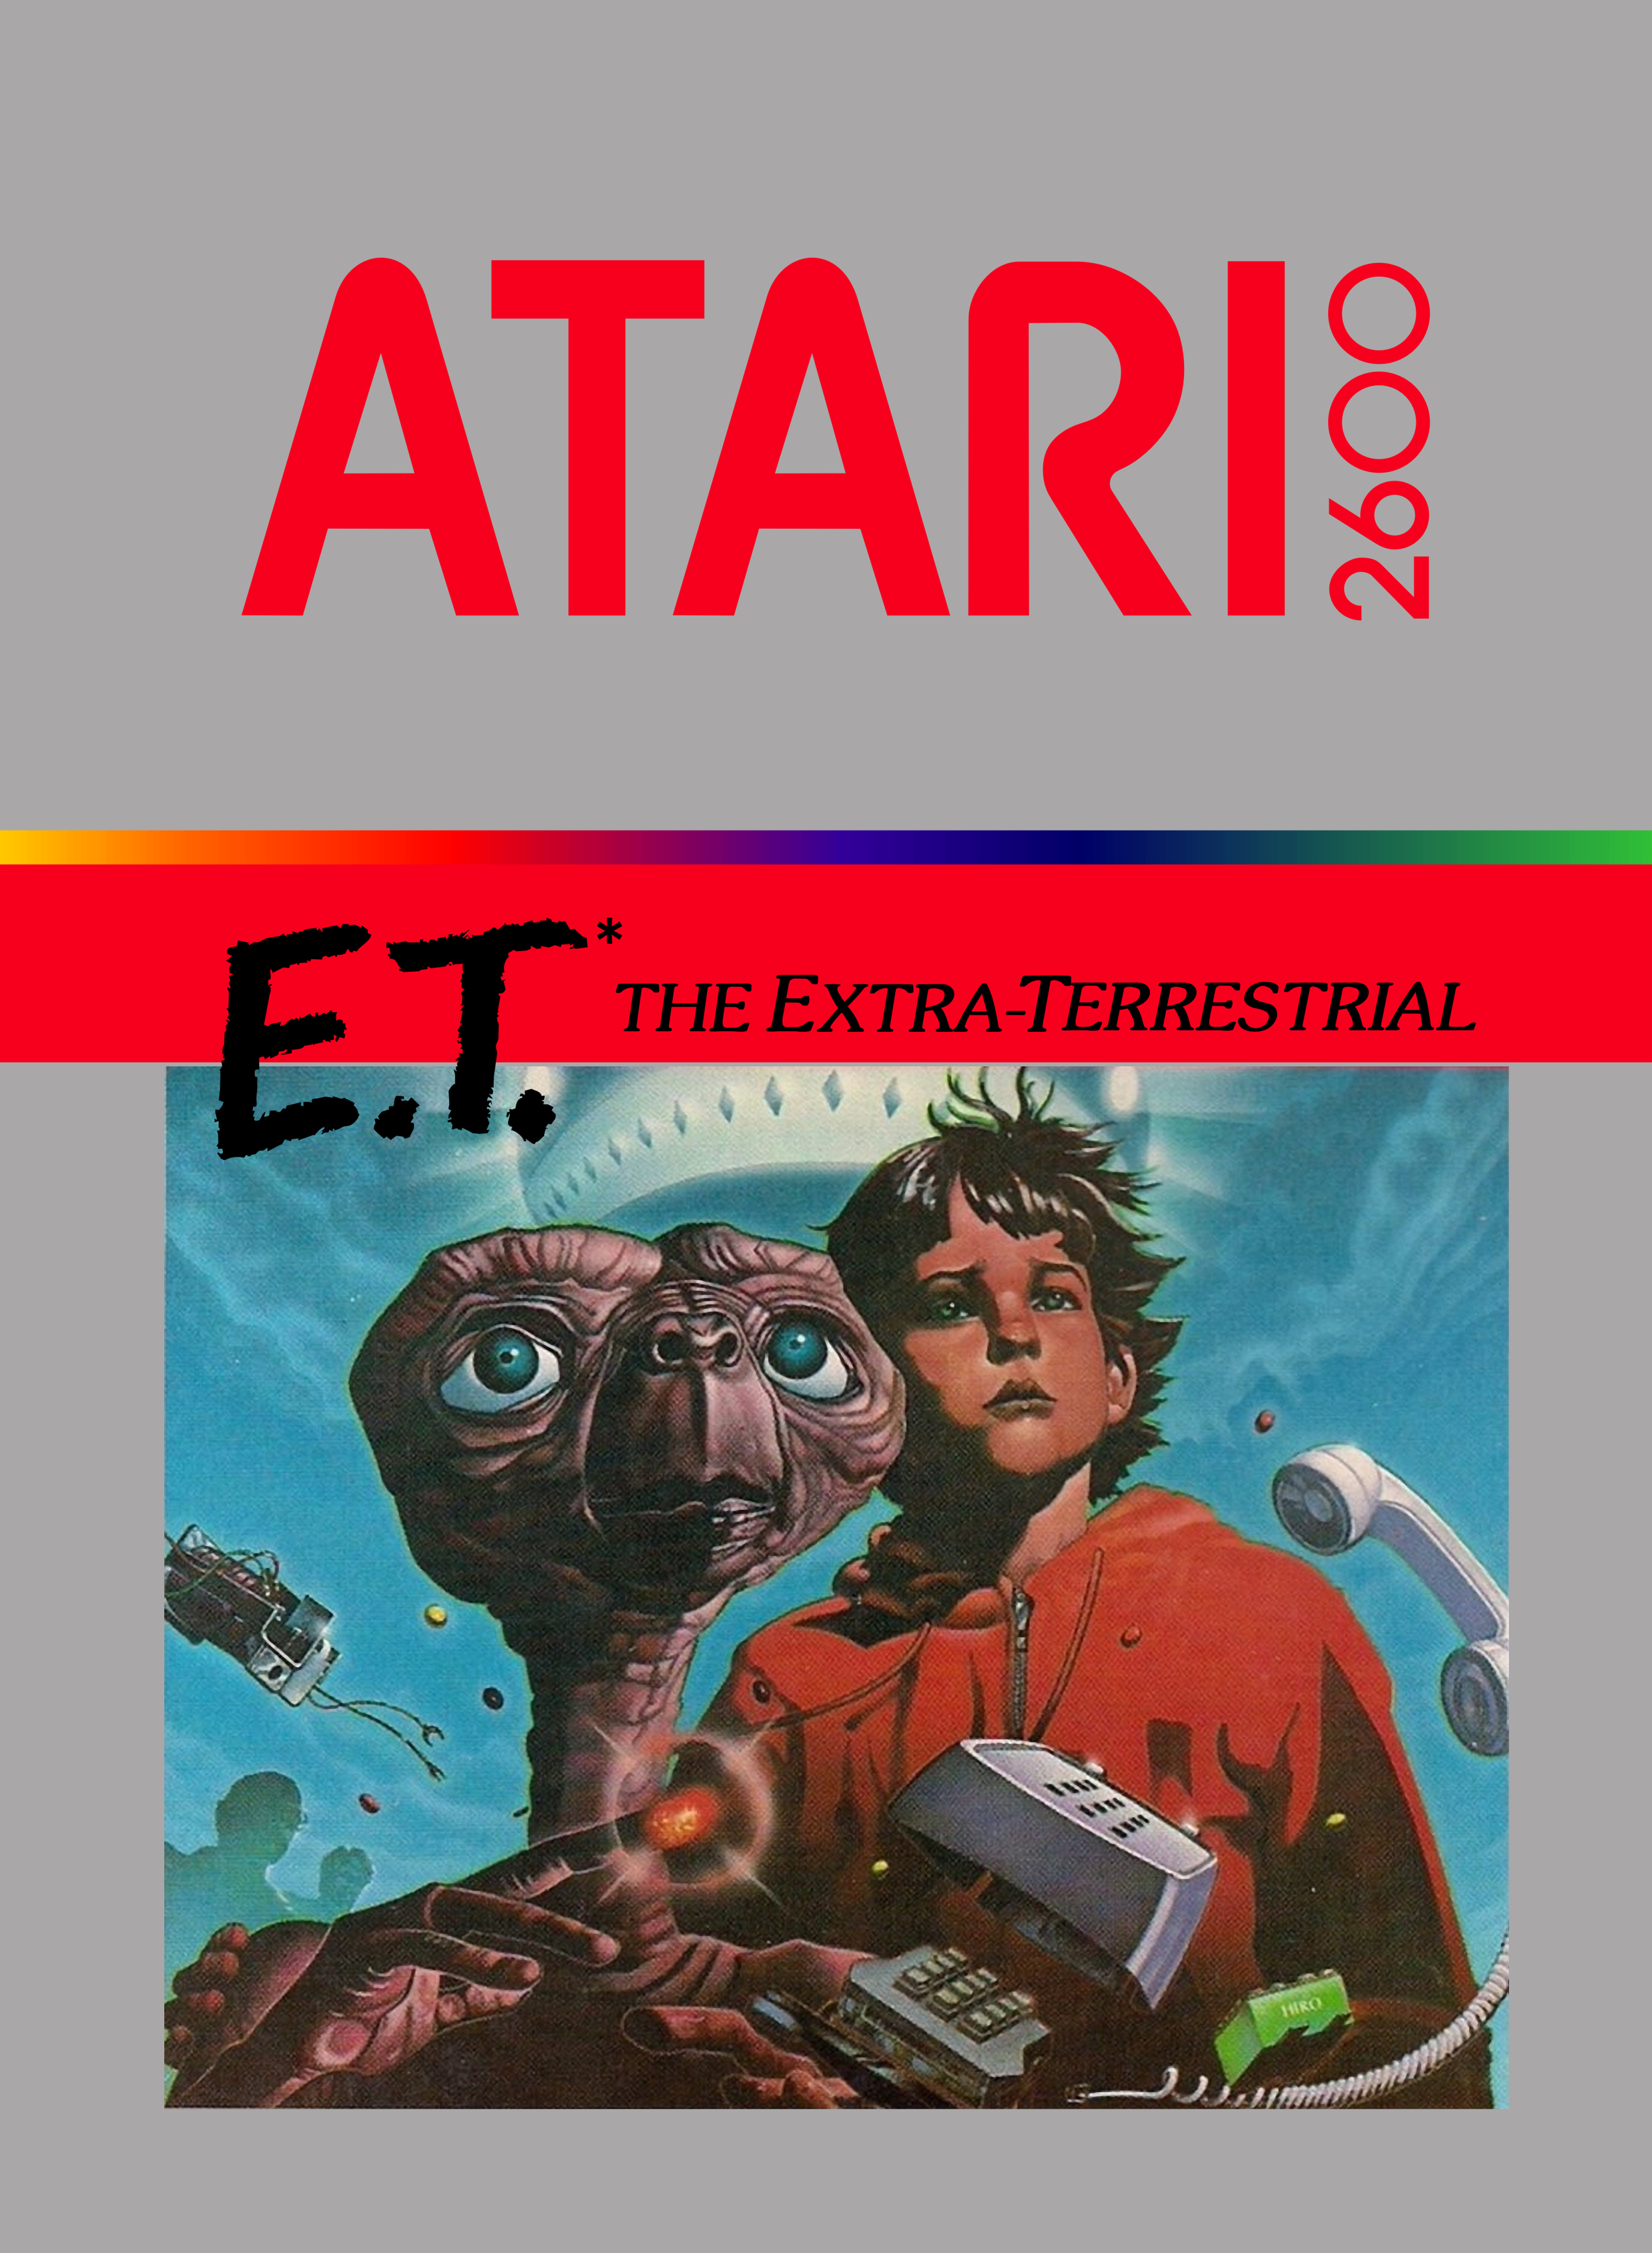 E.T. box cover